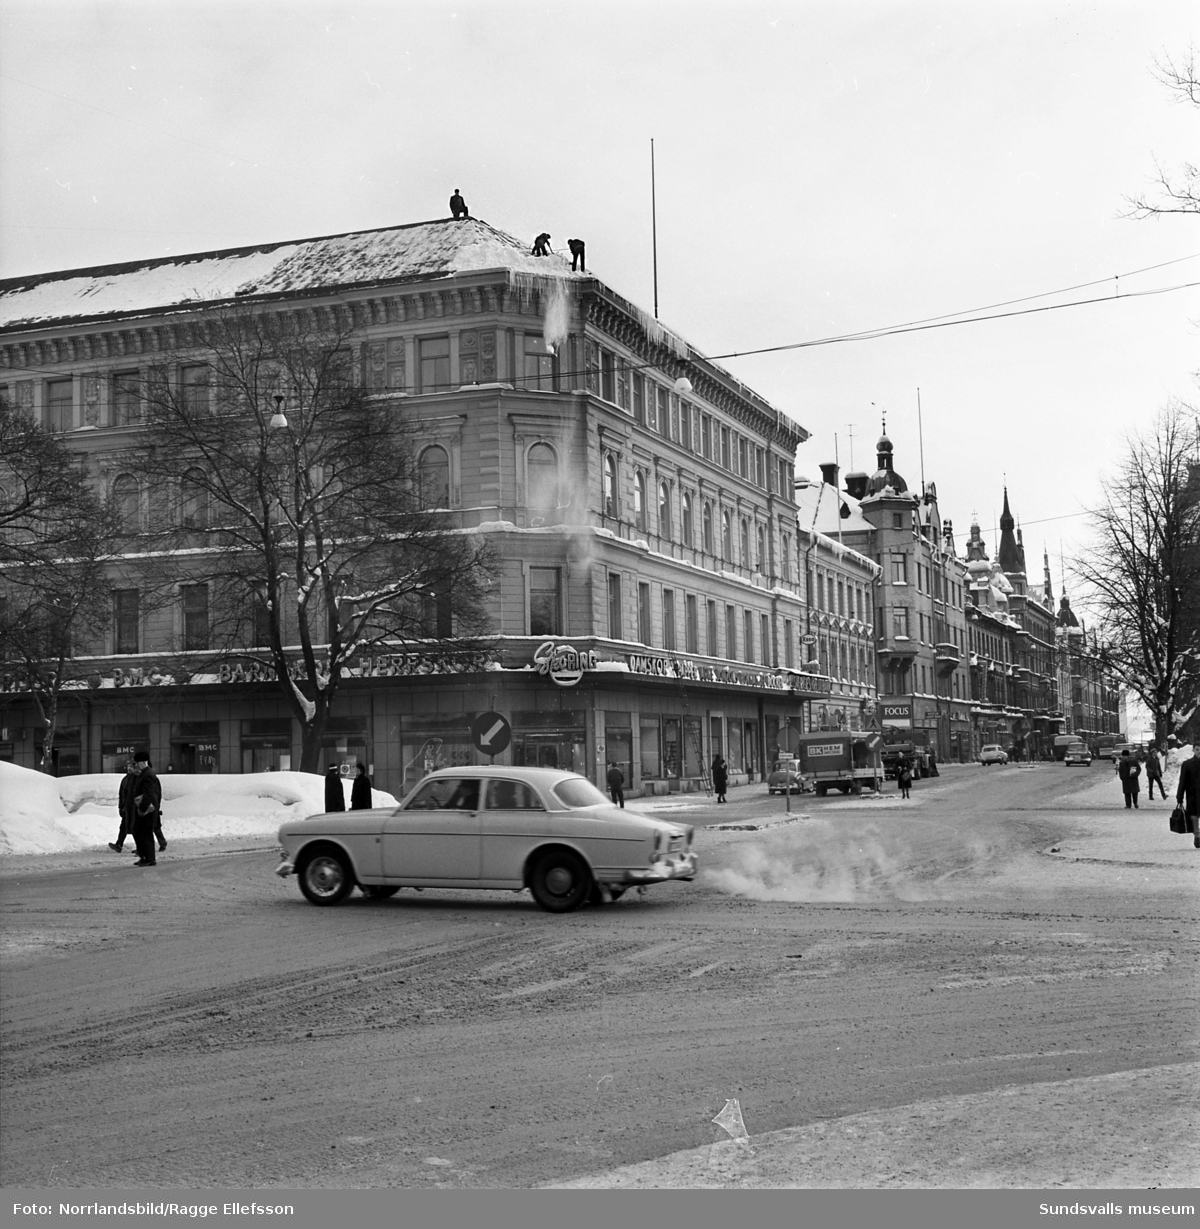 Vinterbilder från Sundsvall den snörika vintern 1966. Esplanaden, Vängåvan, torget och vid Selångersån.